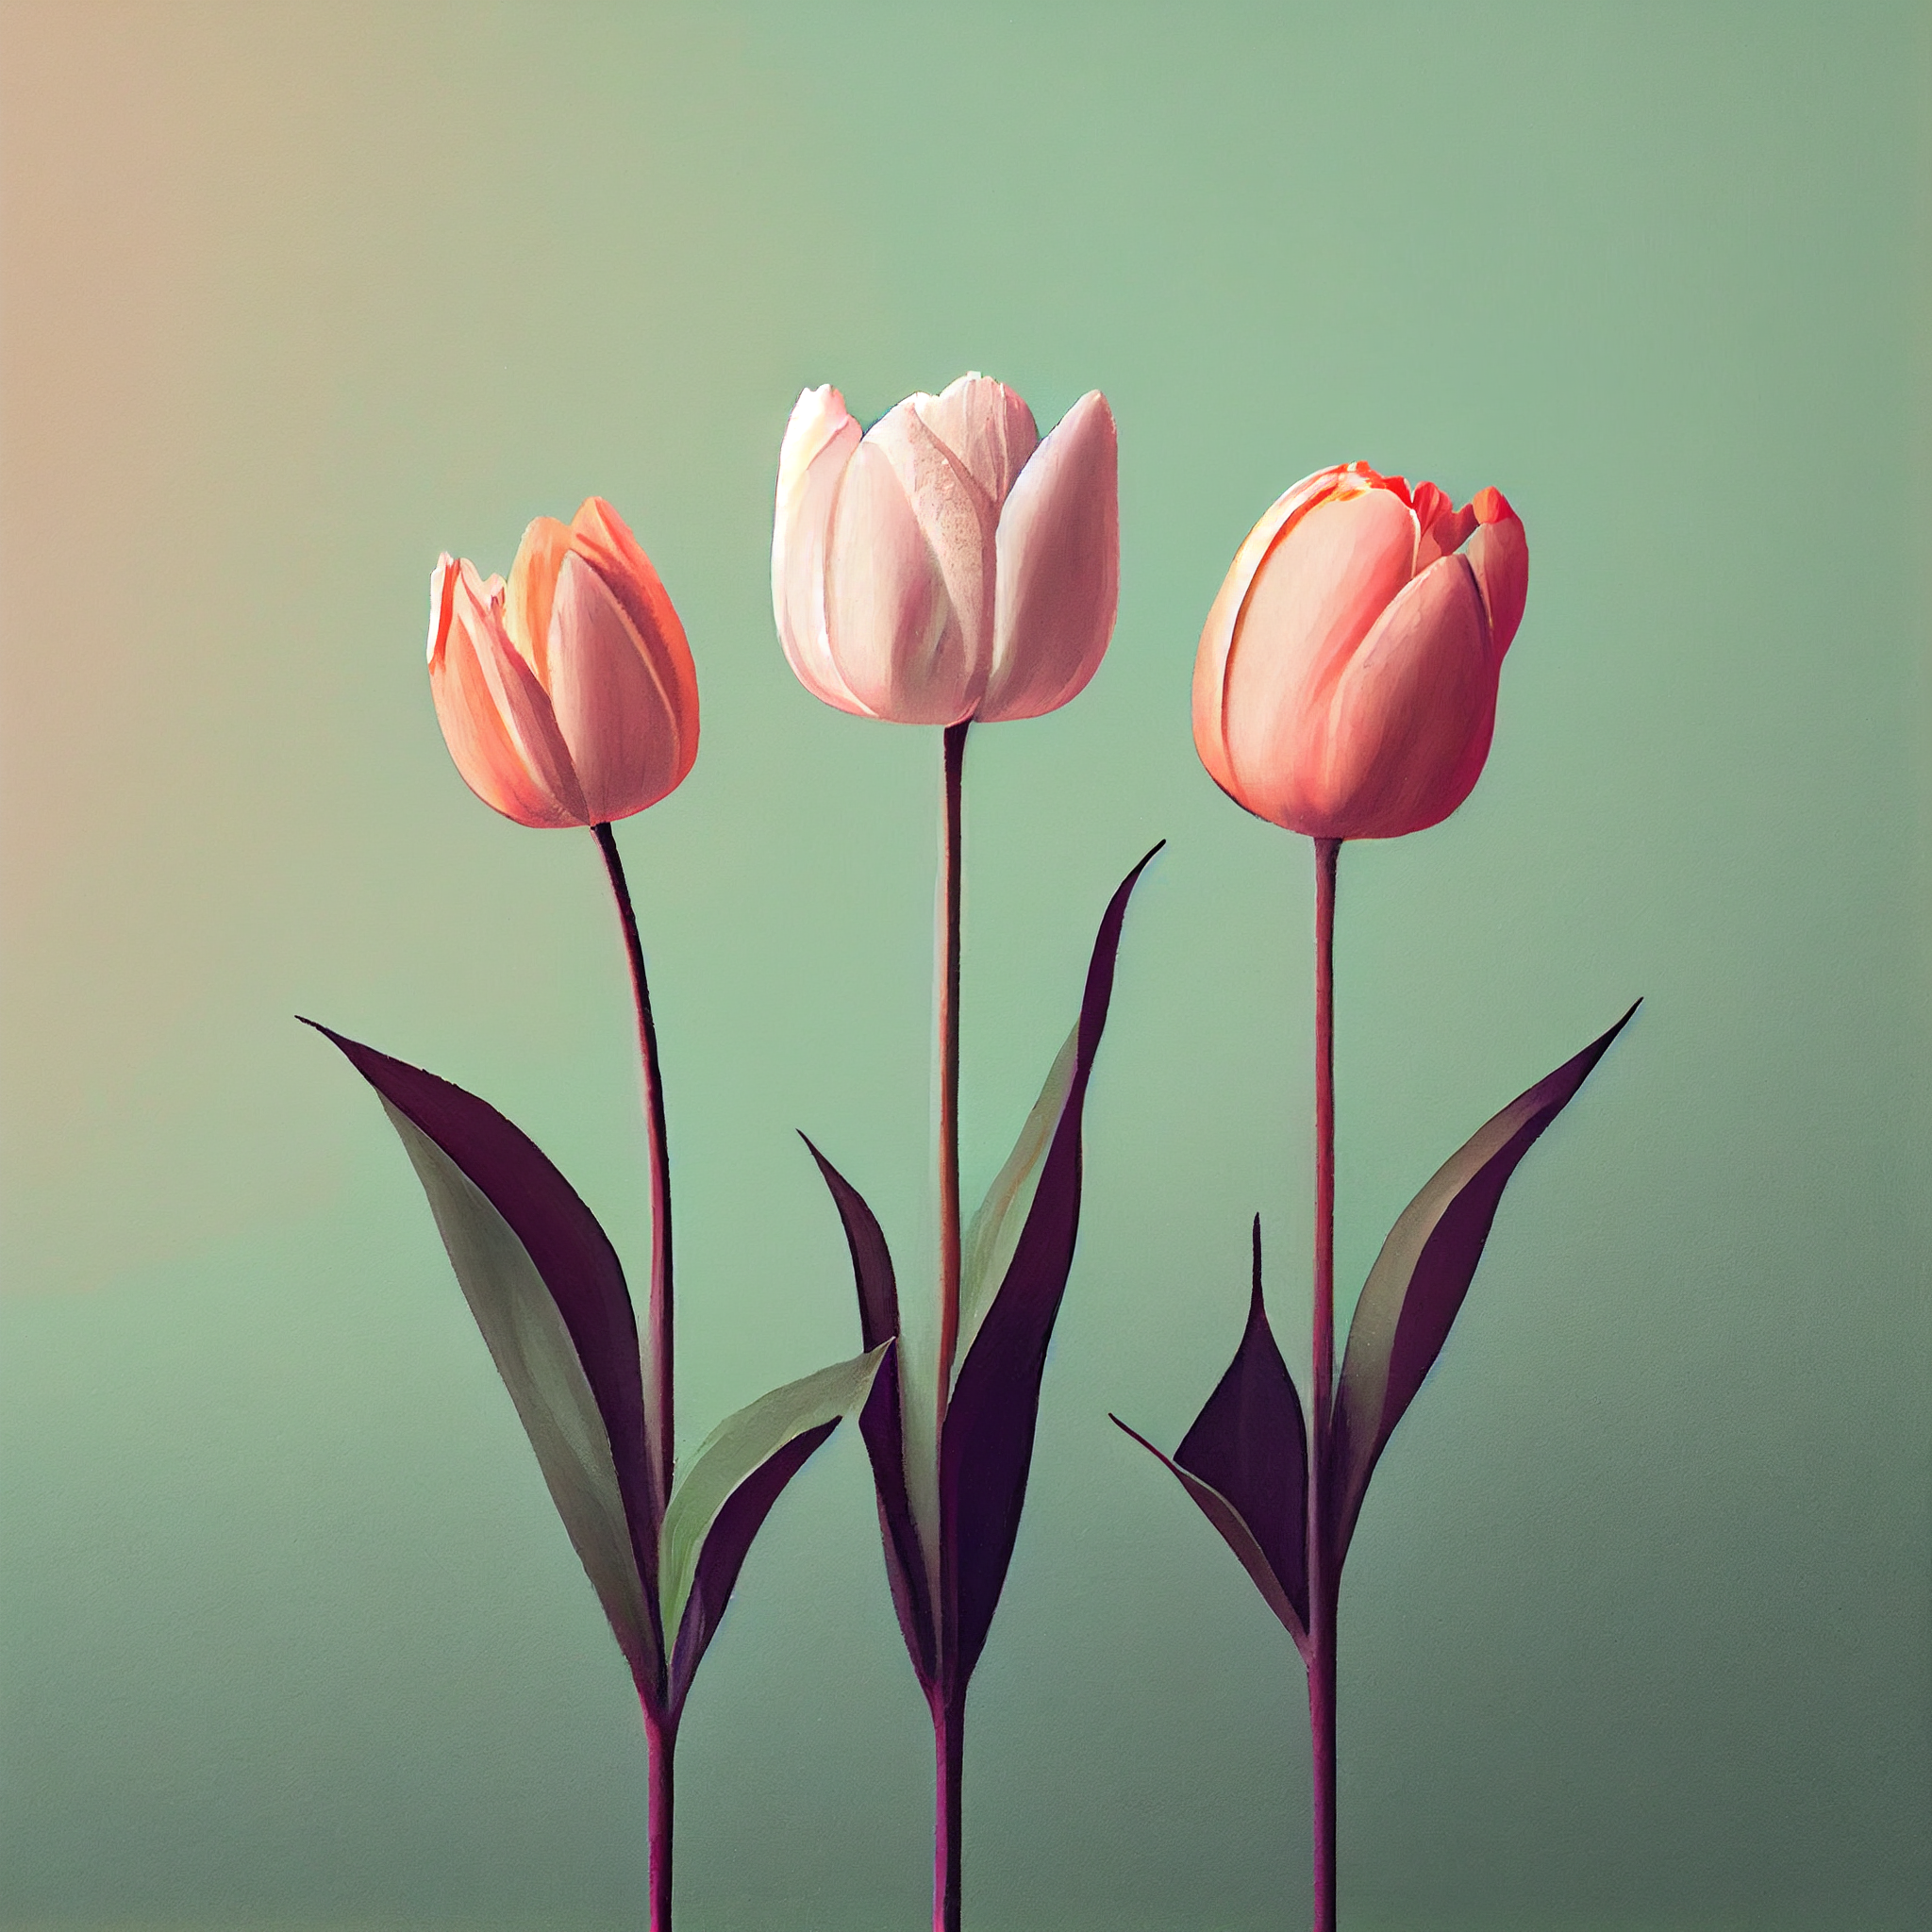 A Minimalistic Art Print of Three Pink Tulips